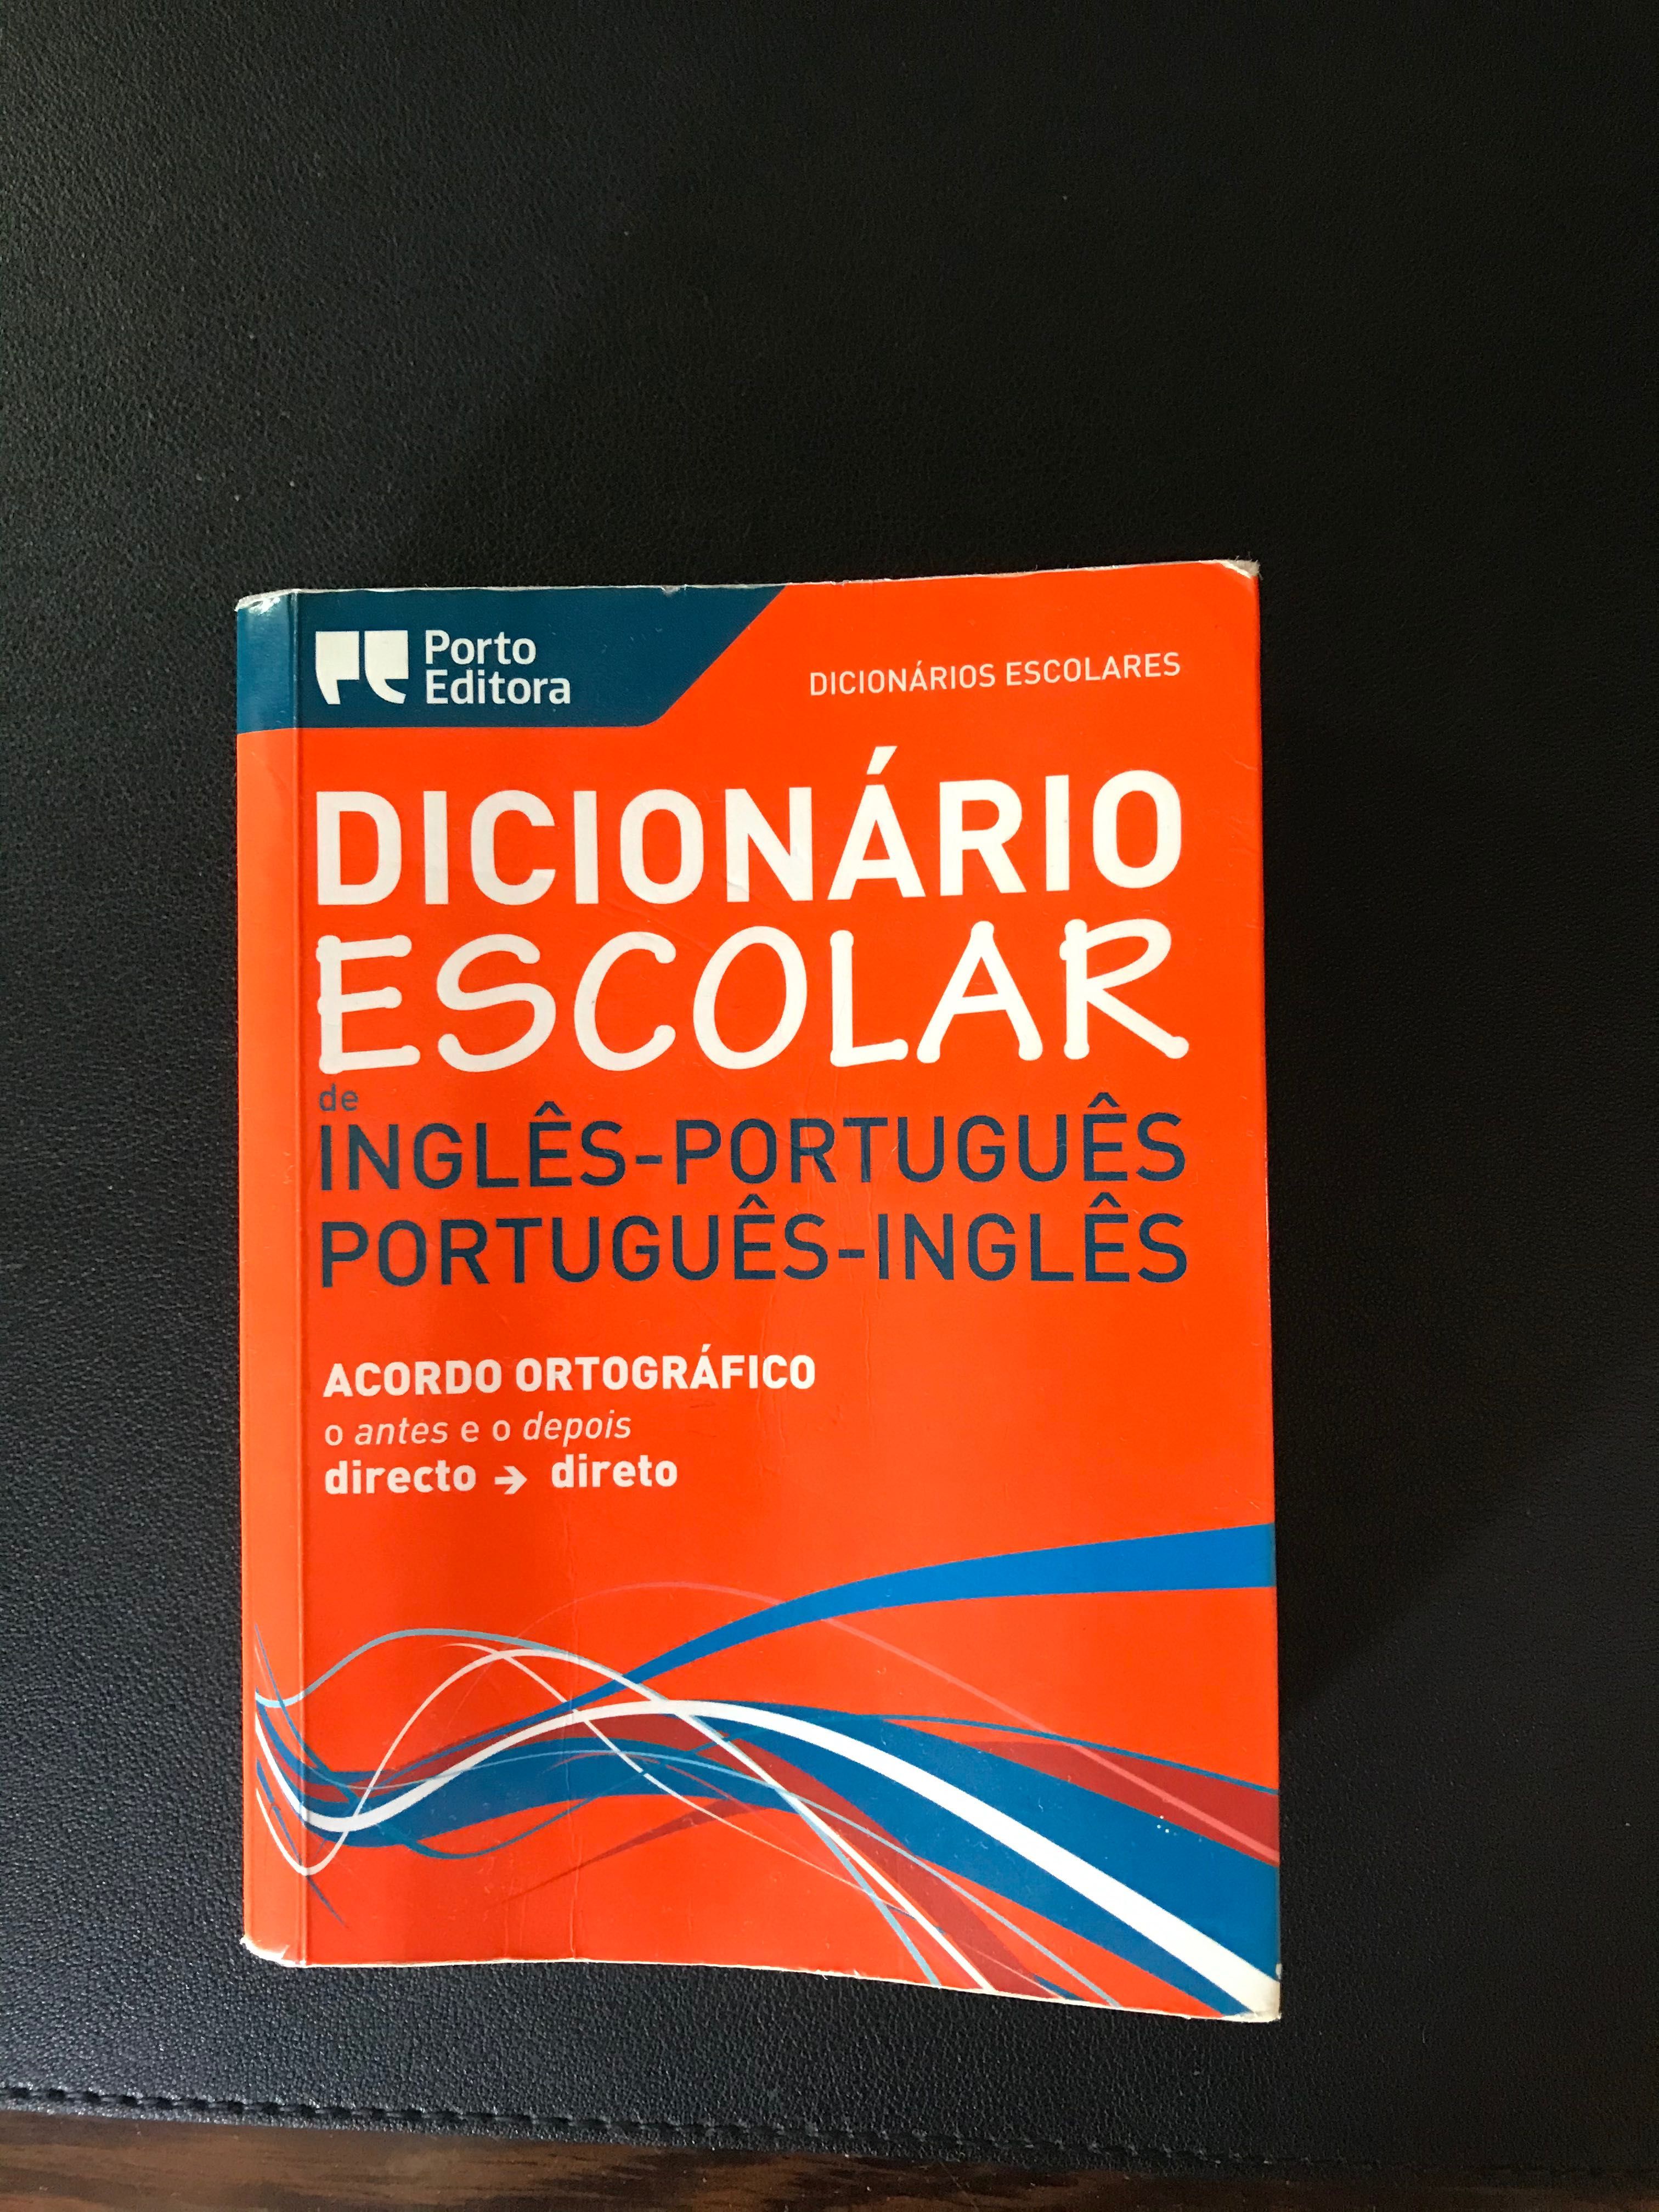 Dicionário Escolar Inglês-Português Português-Inglês Porto Editora